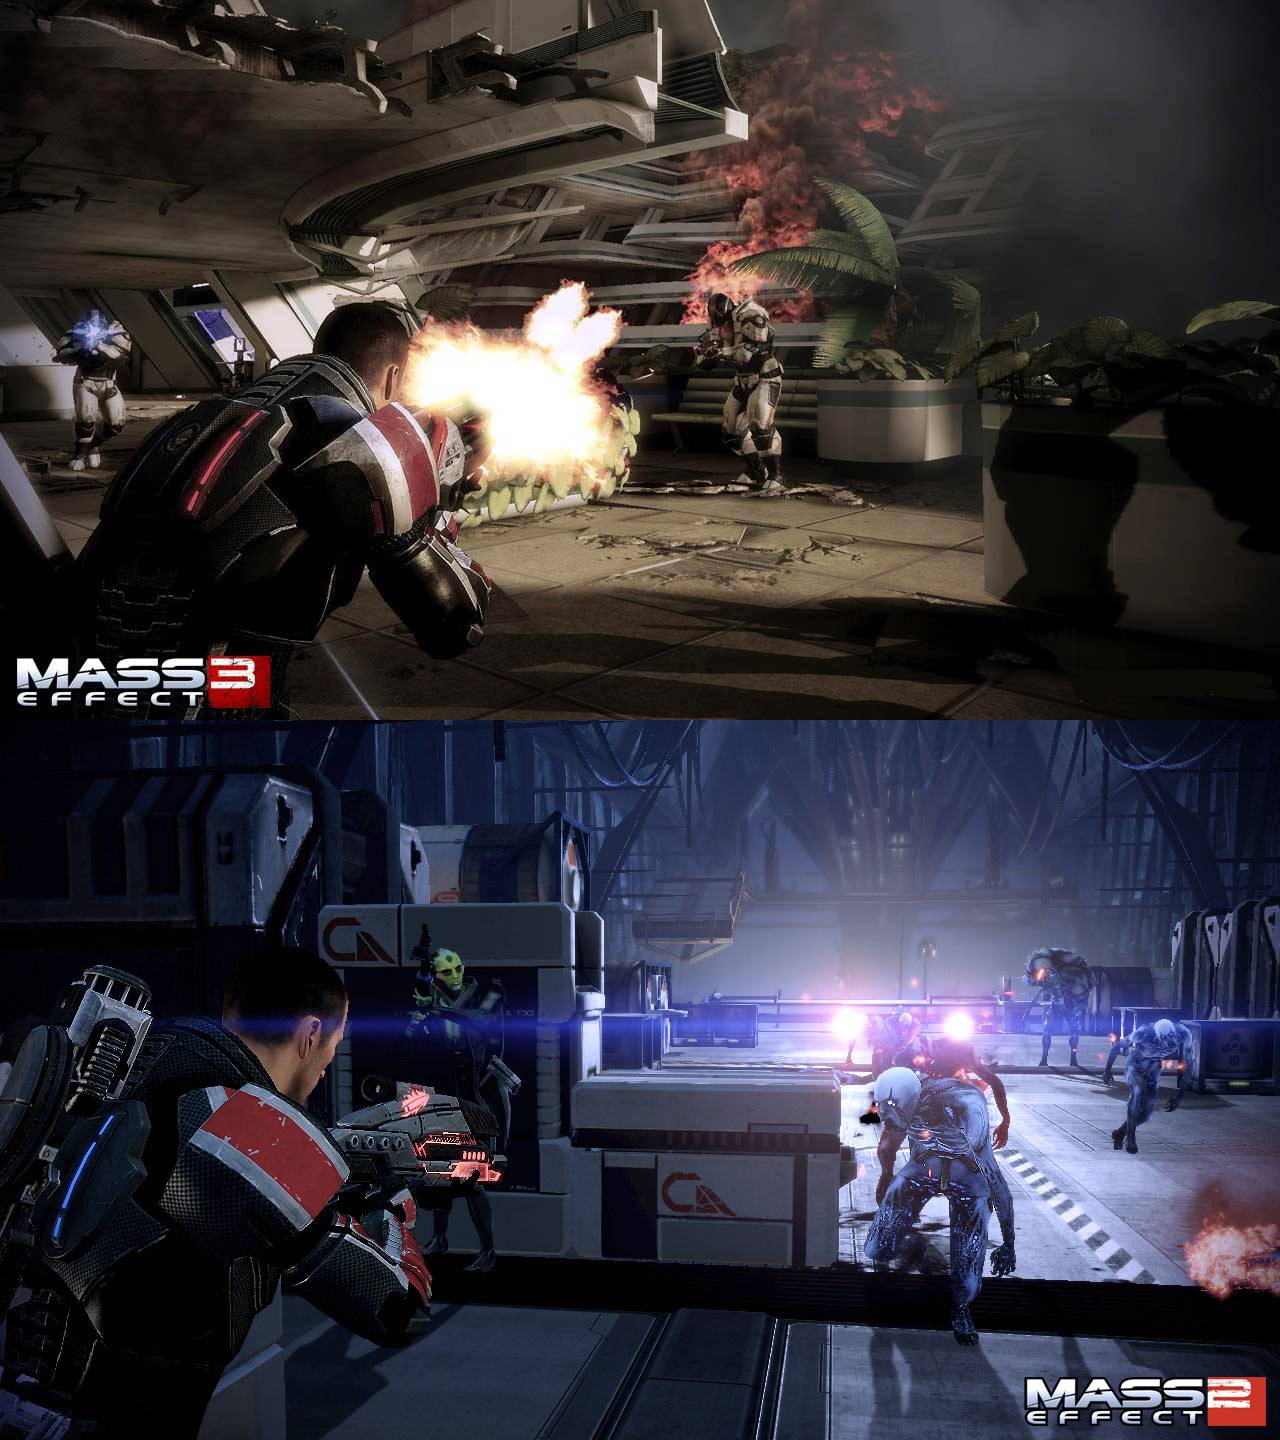 http://gamingbolt.com/wp-content/gallery/mass-effect-3-vs-mass-effect-2-hd-screenshot-comparison/1.jpg